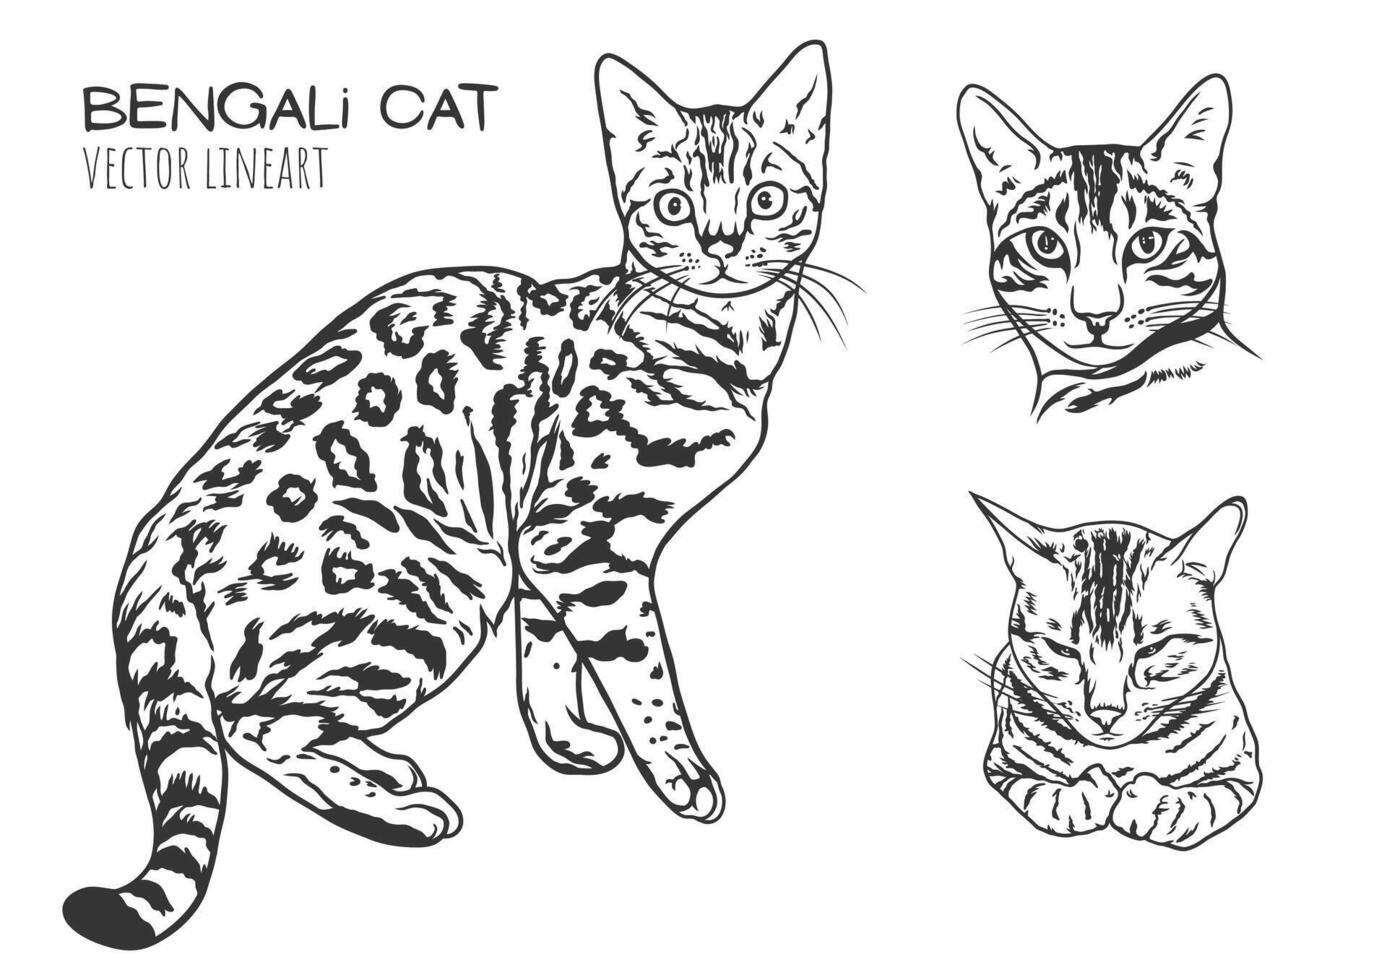 uma vetor linha arte ilustração do uma bengali gatos com pontos, listras, e expressivo face